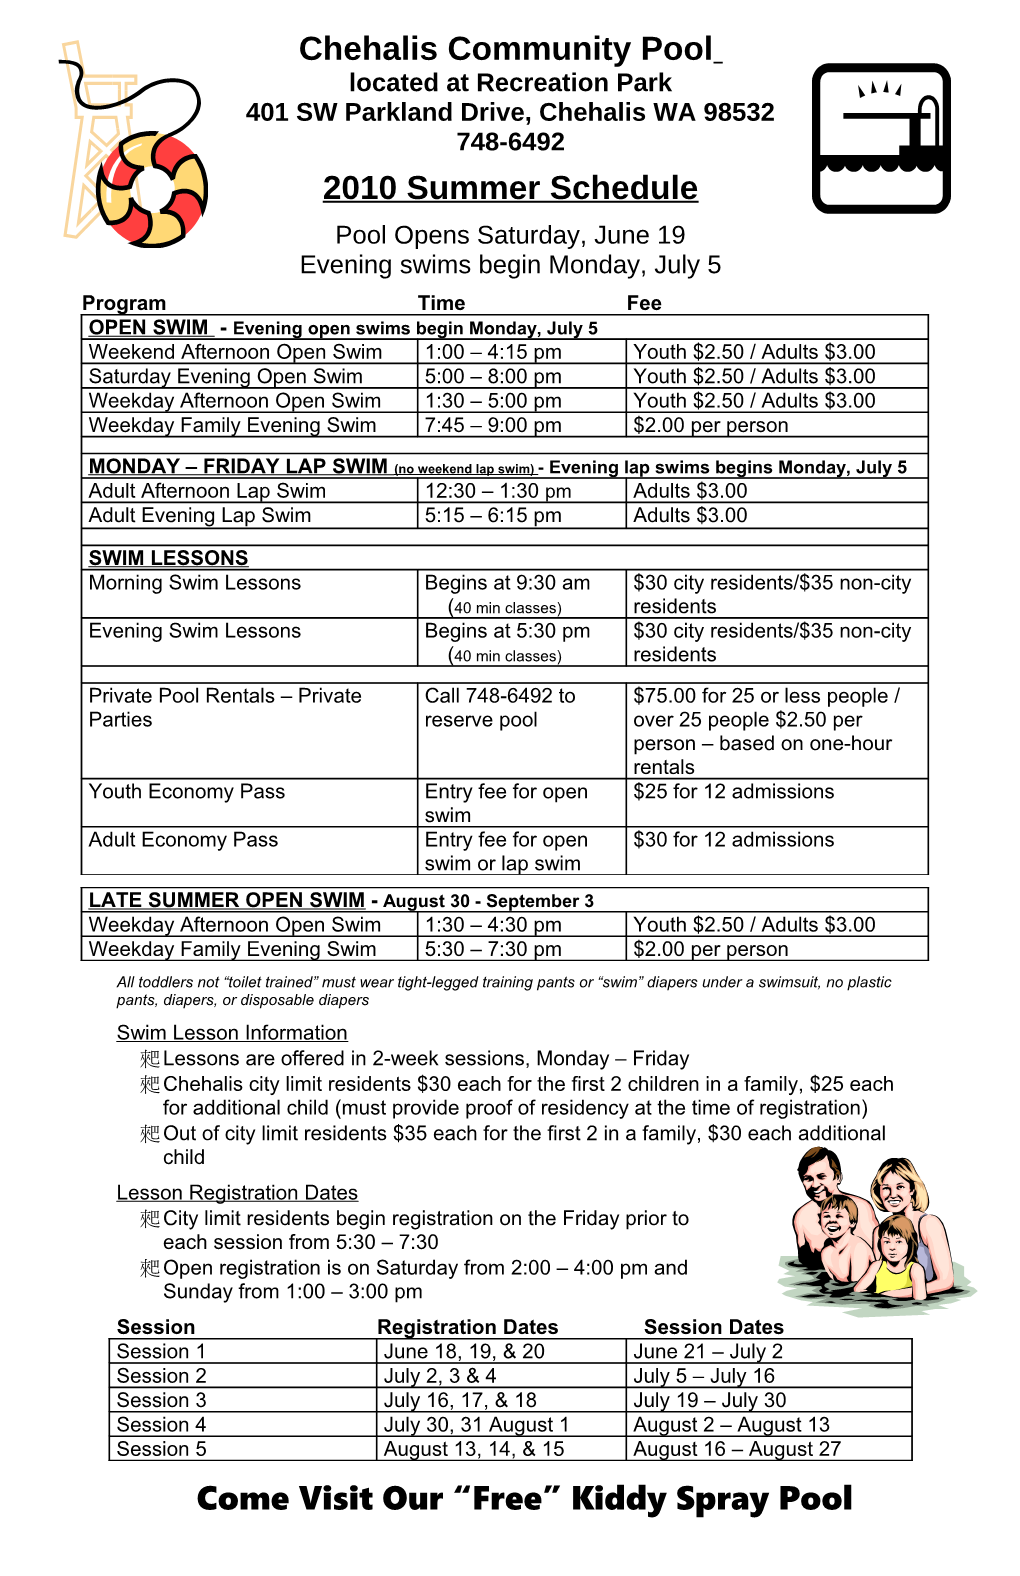 Chehalis Community Pool Summer Schedule